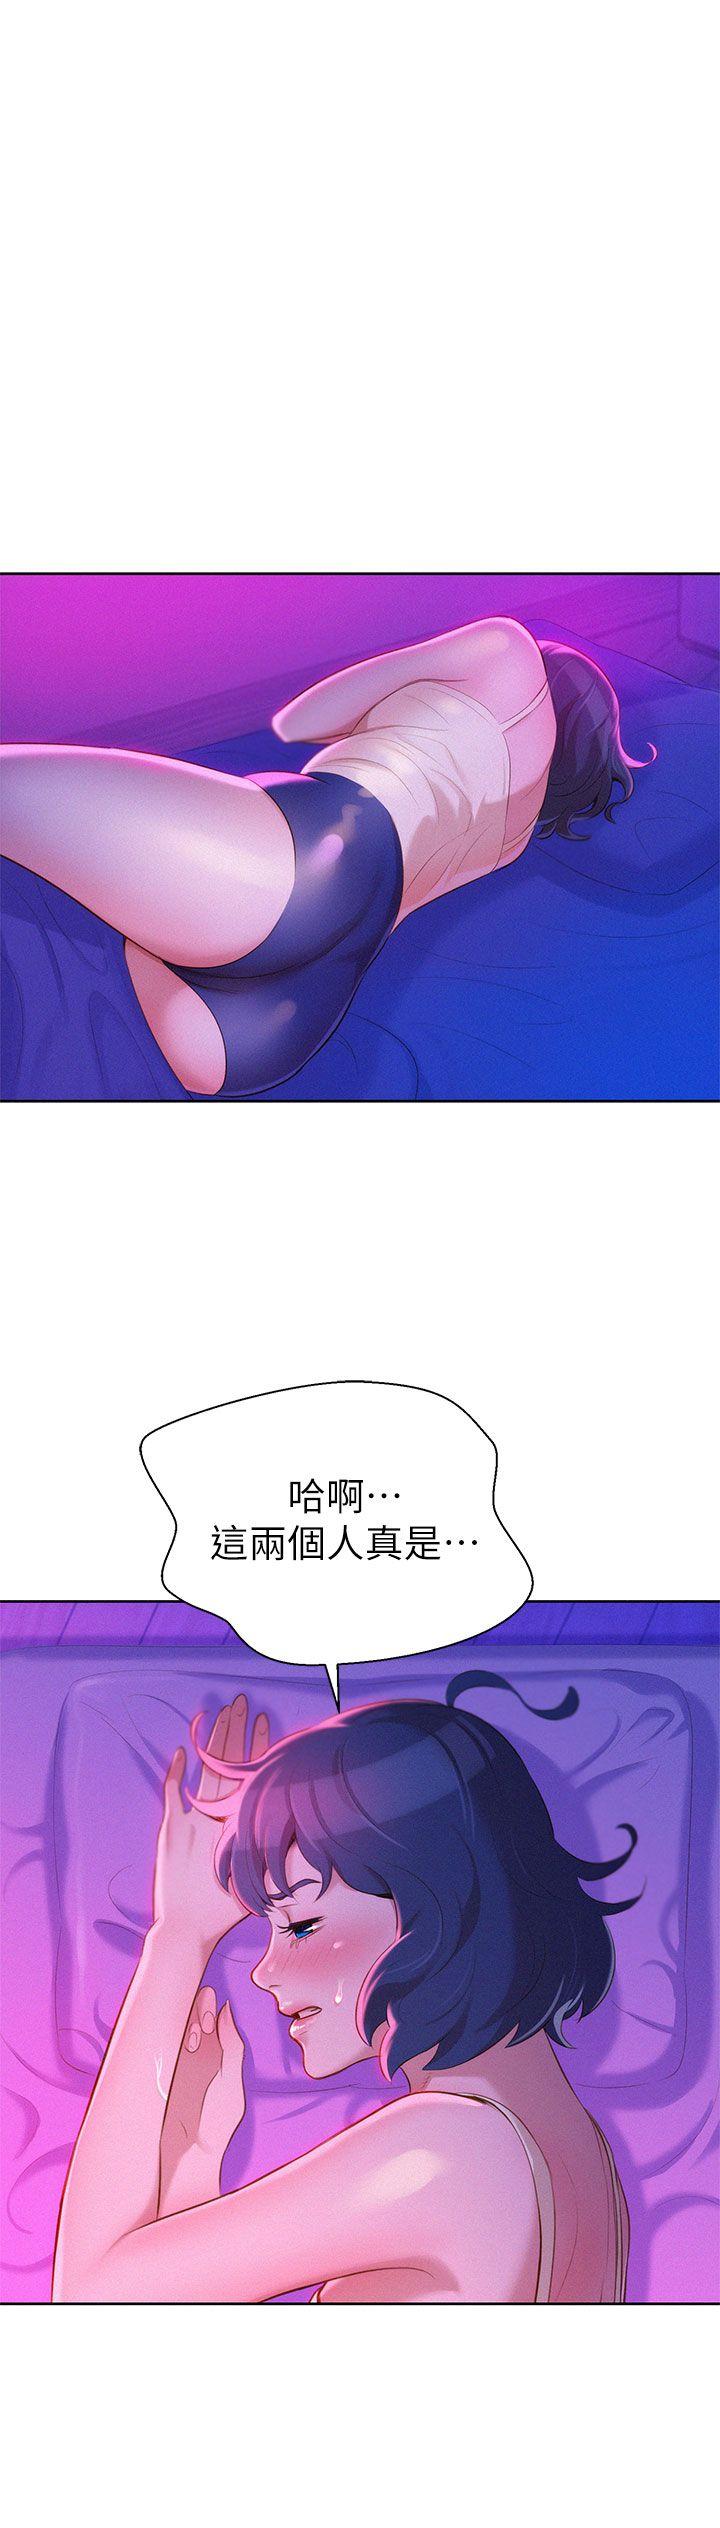 《漂亮乾姊姊》漫画 第17话 - 你跟多熙姊睡了吗?